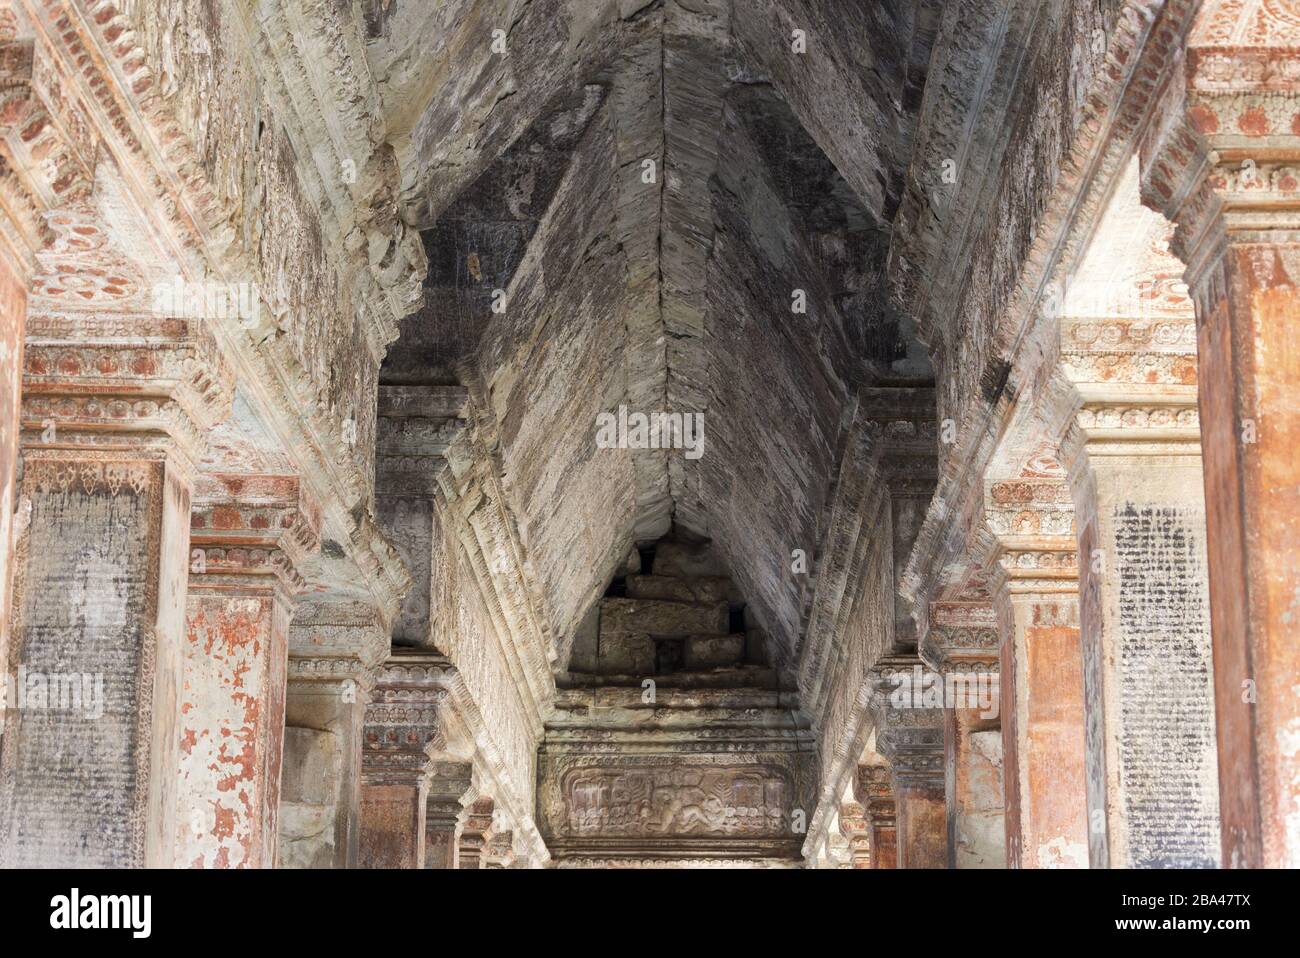 Techo texturizado y antiguas paredes del templo Angkor Wat, famoso complejo budista Khmer cerca de Siem Reap, Camboya Foto de stock